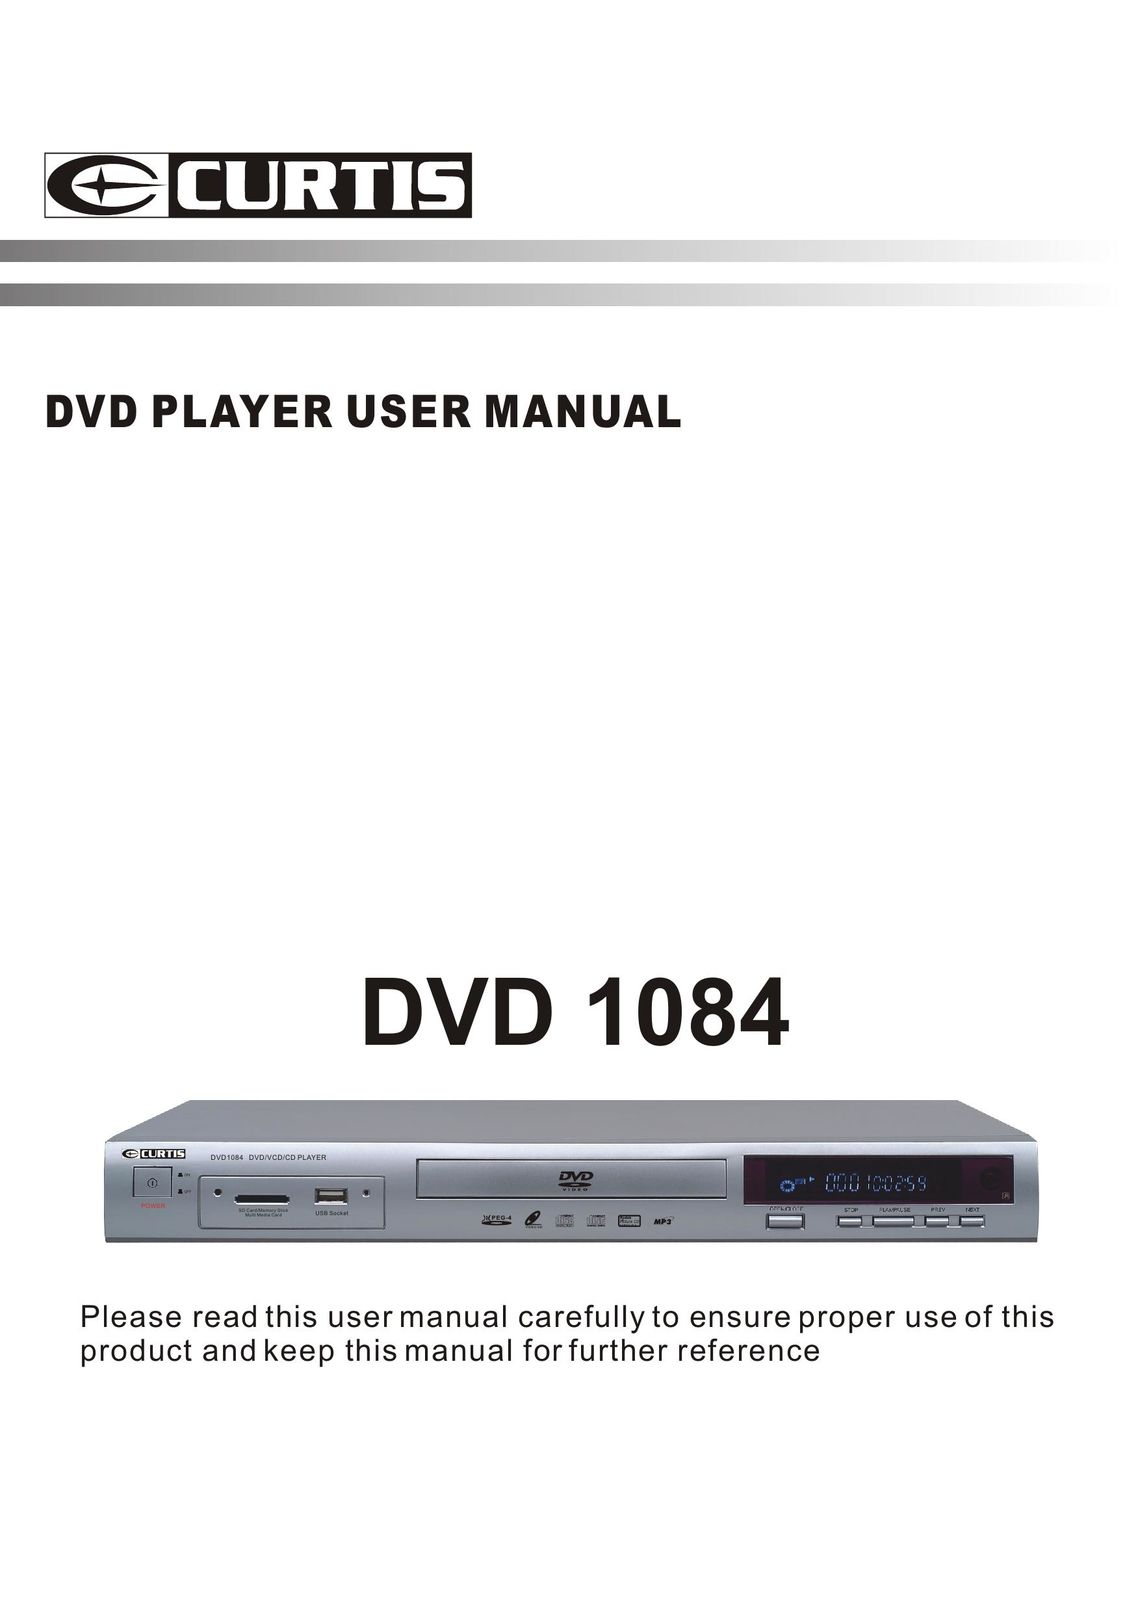 Curtis DVD 1084 DVD Player User Manual